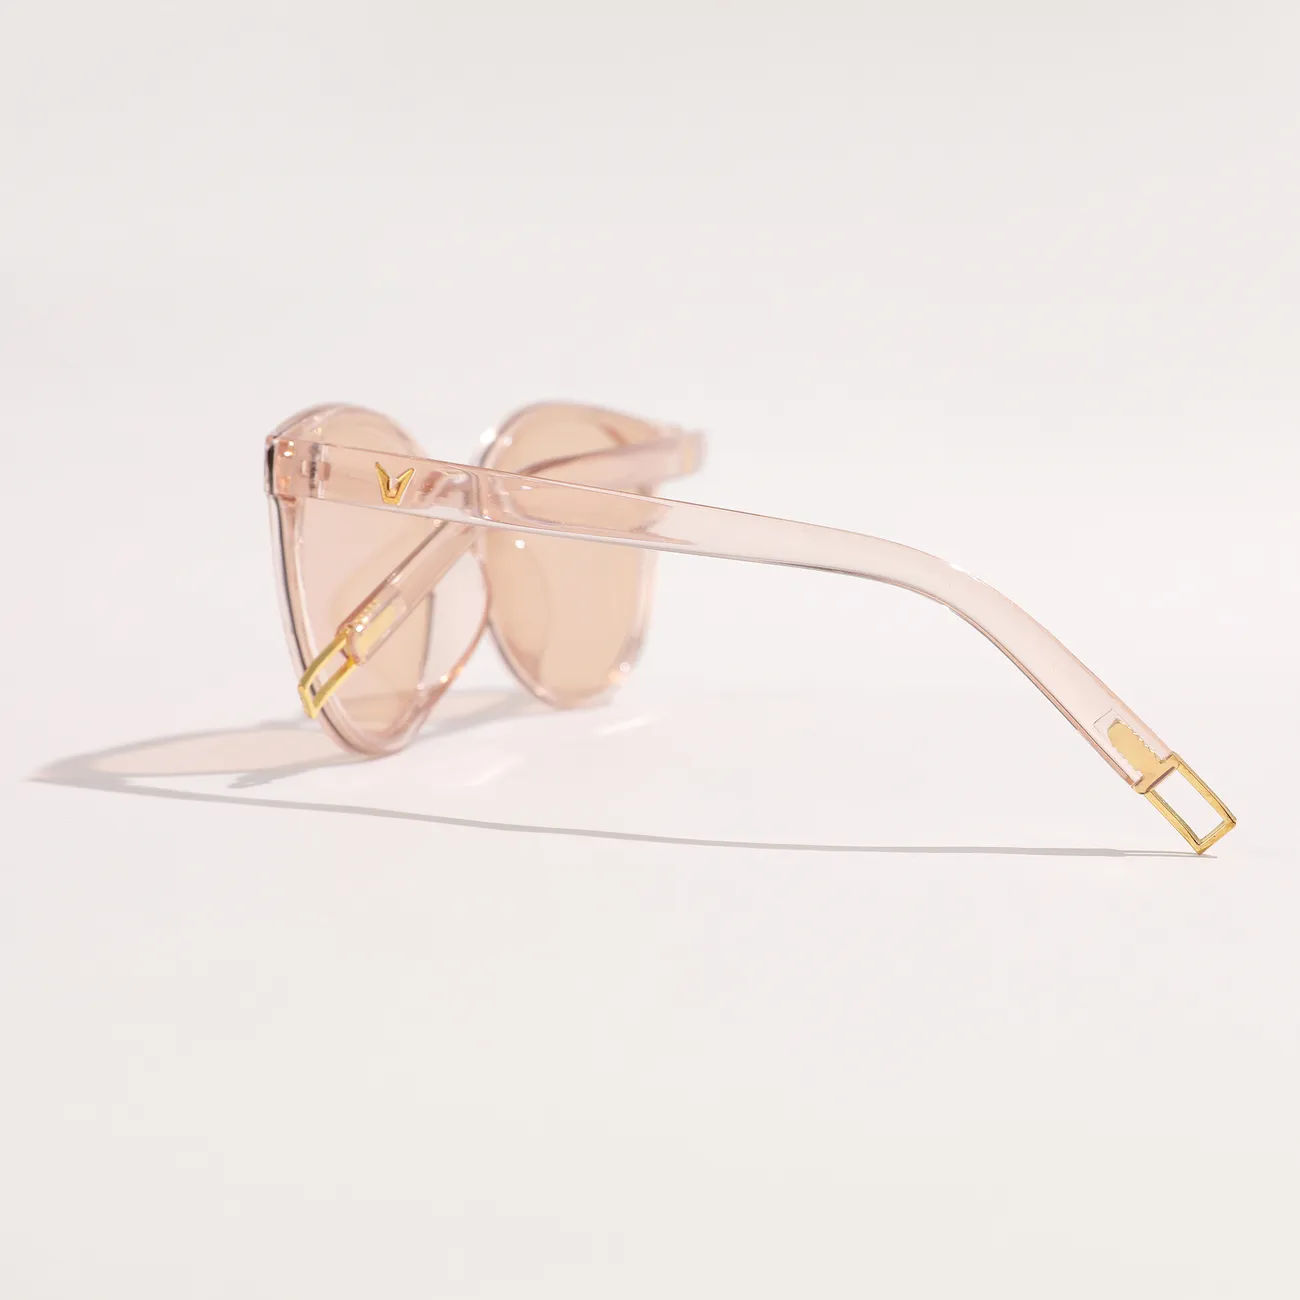 Criança / crianças menina / menino casual vintage óculos de sol artísticos com saco de pano macio Ouro de Rosa big image 1